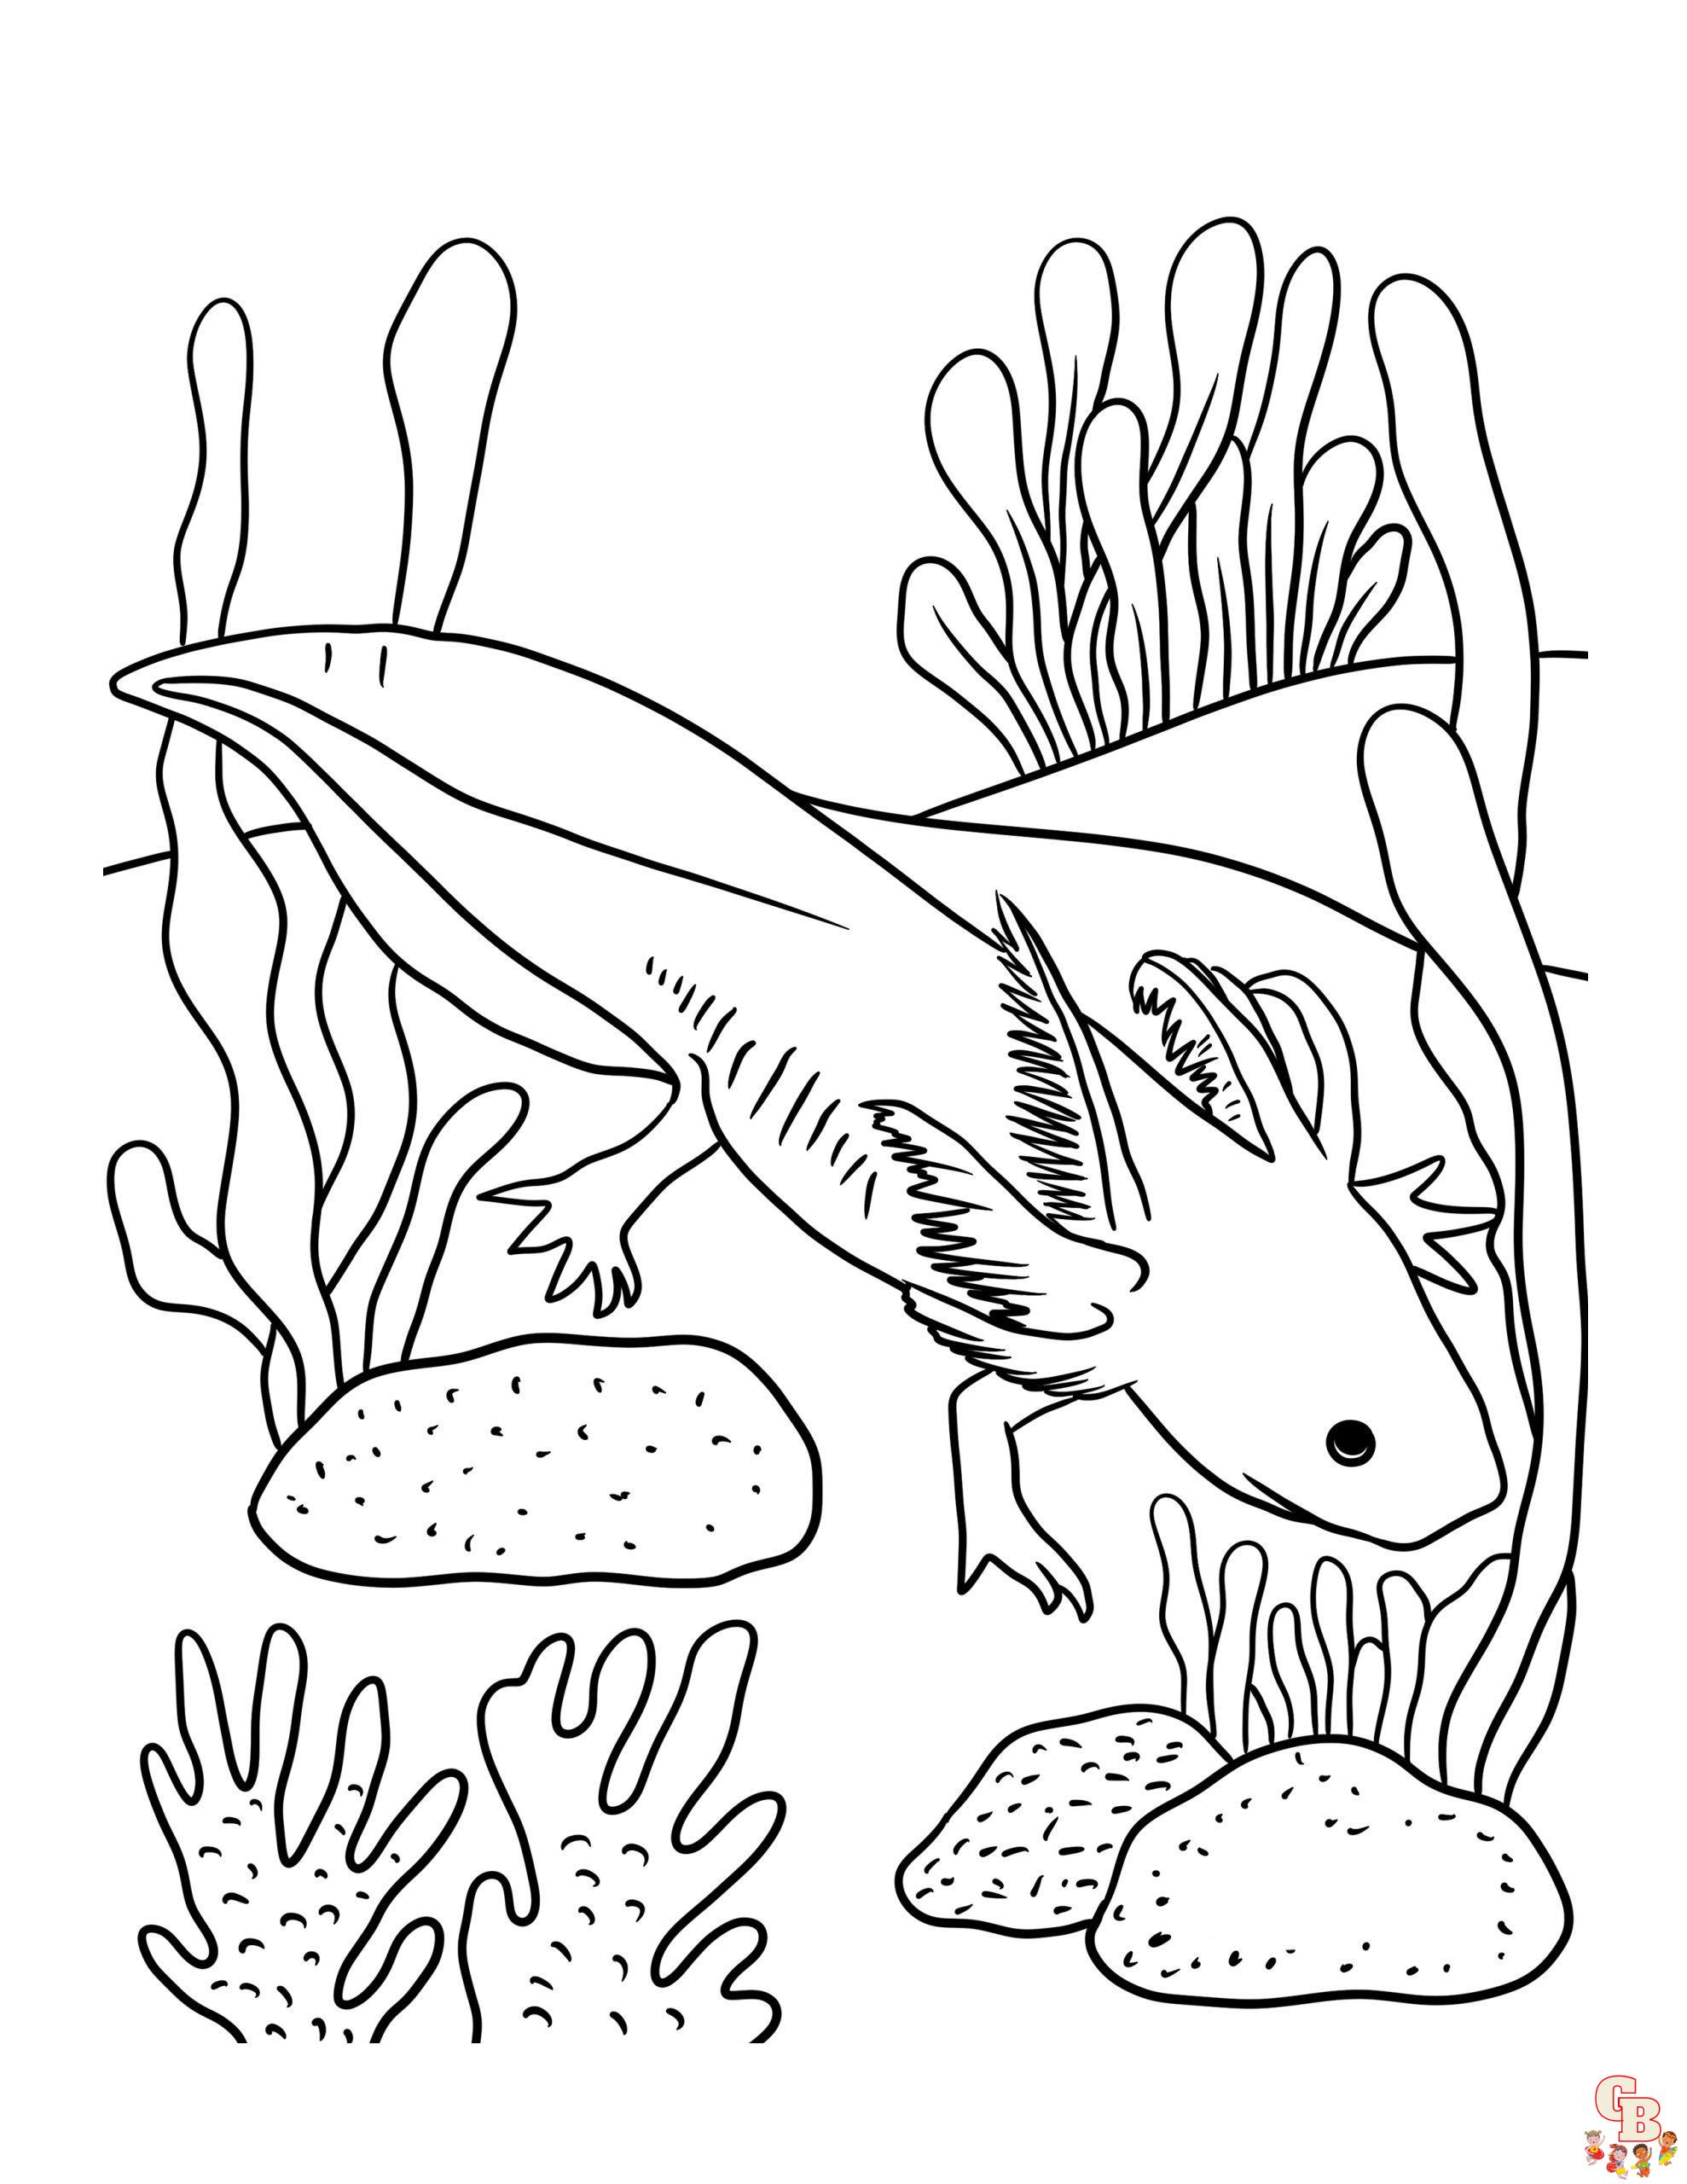 Axolotl zum ausdrucken